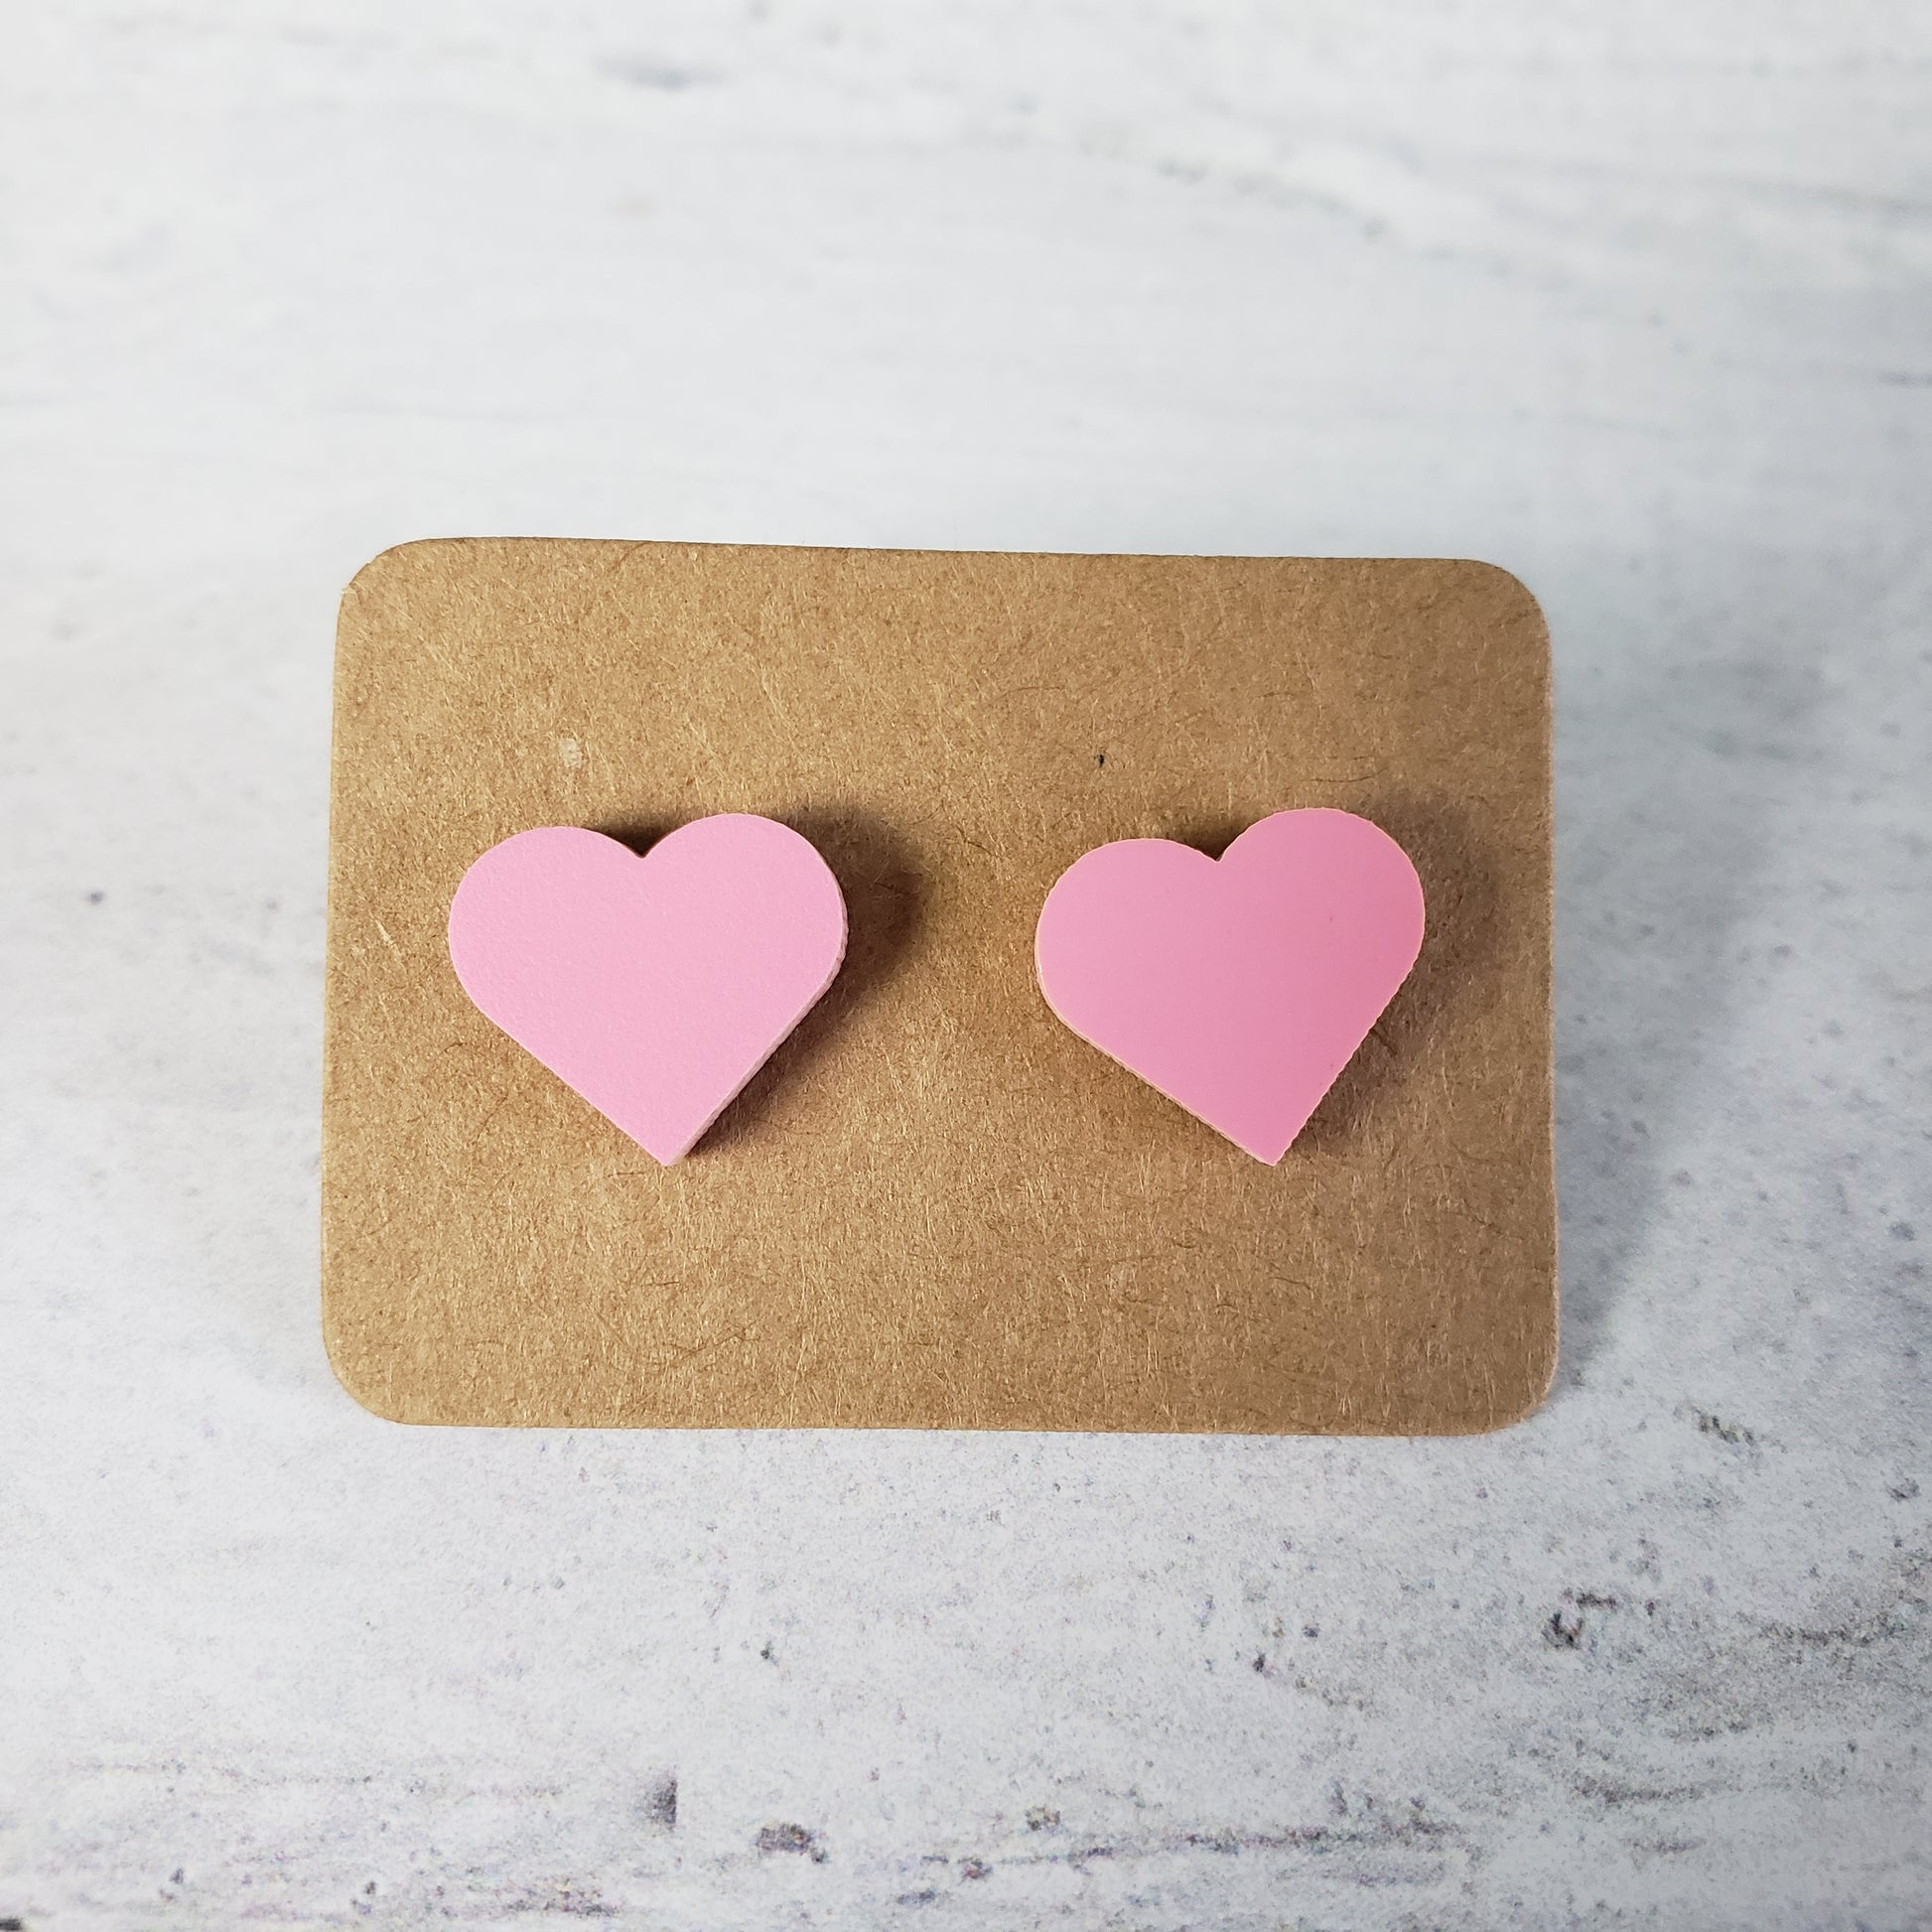 Matte pastel pink heart shaped stud earrings.